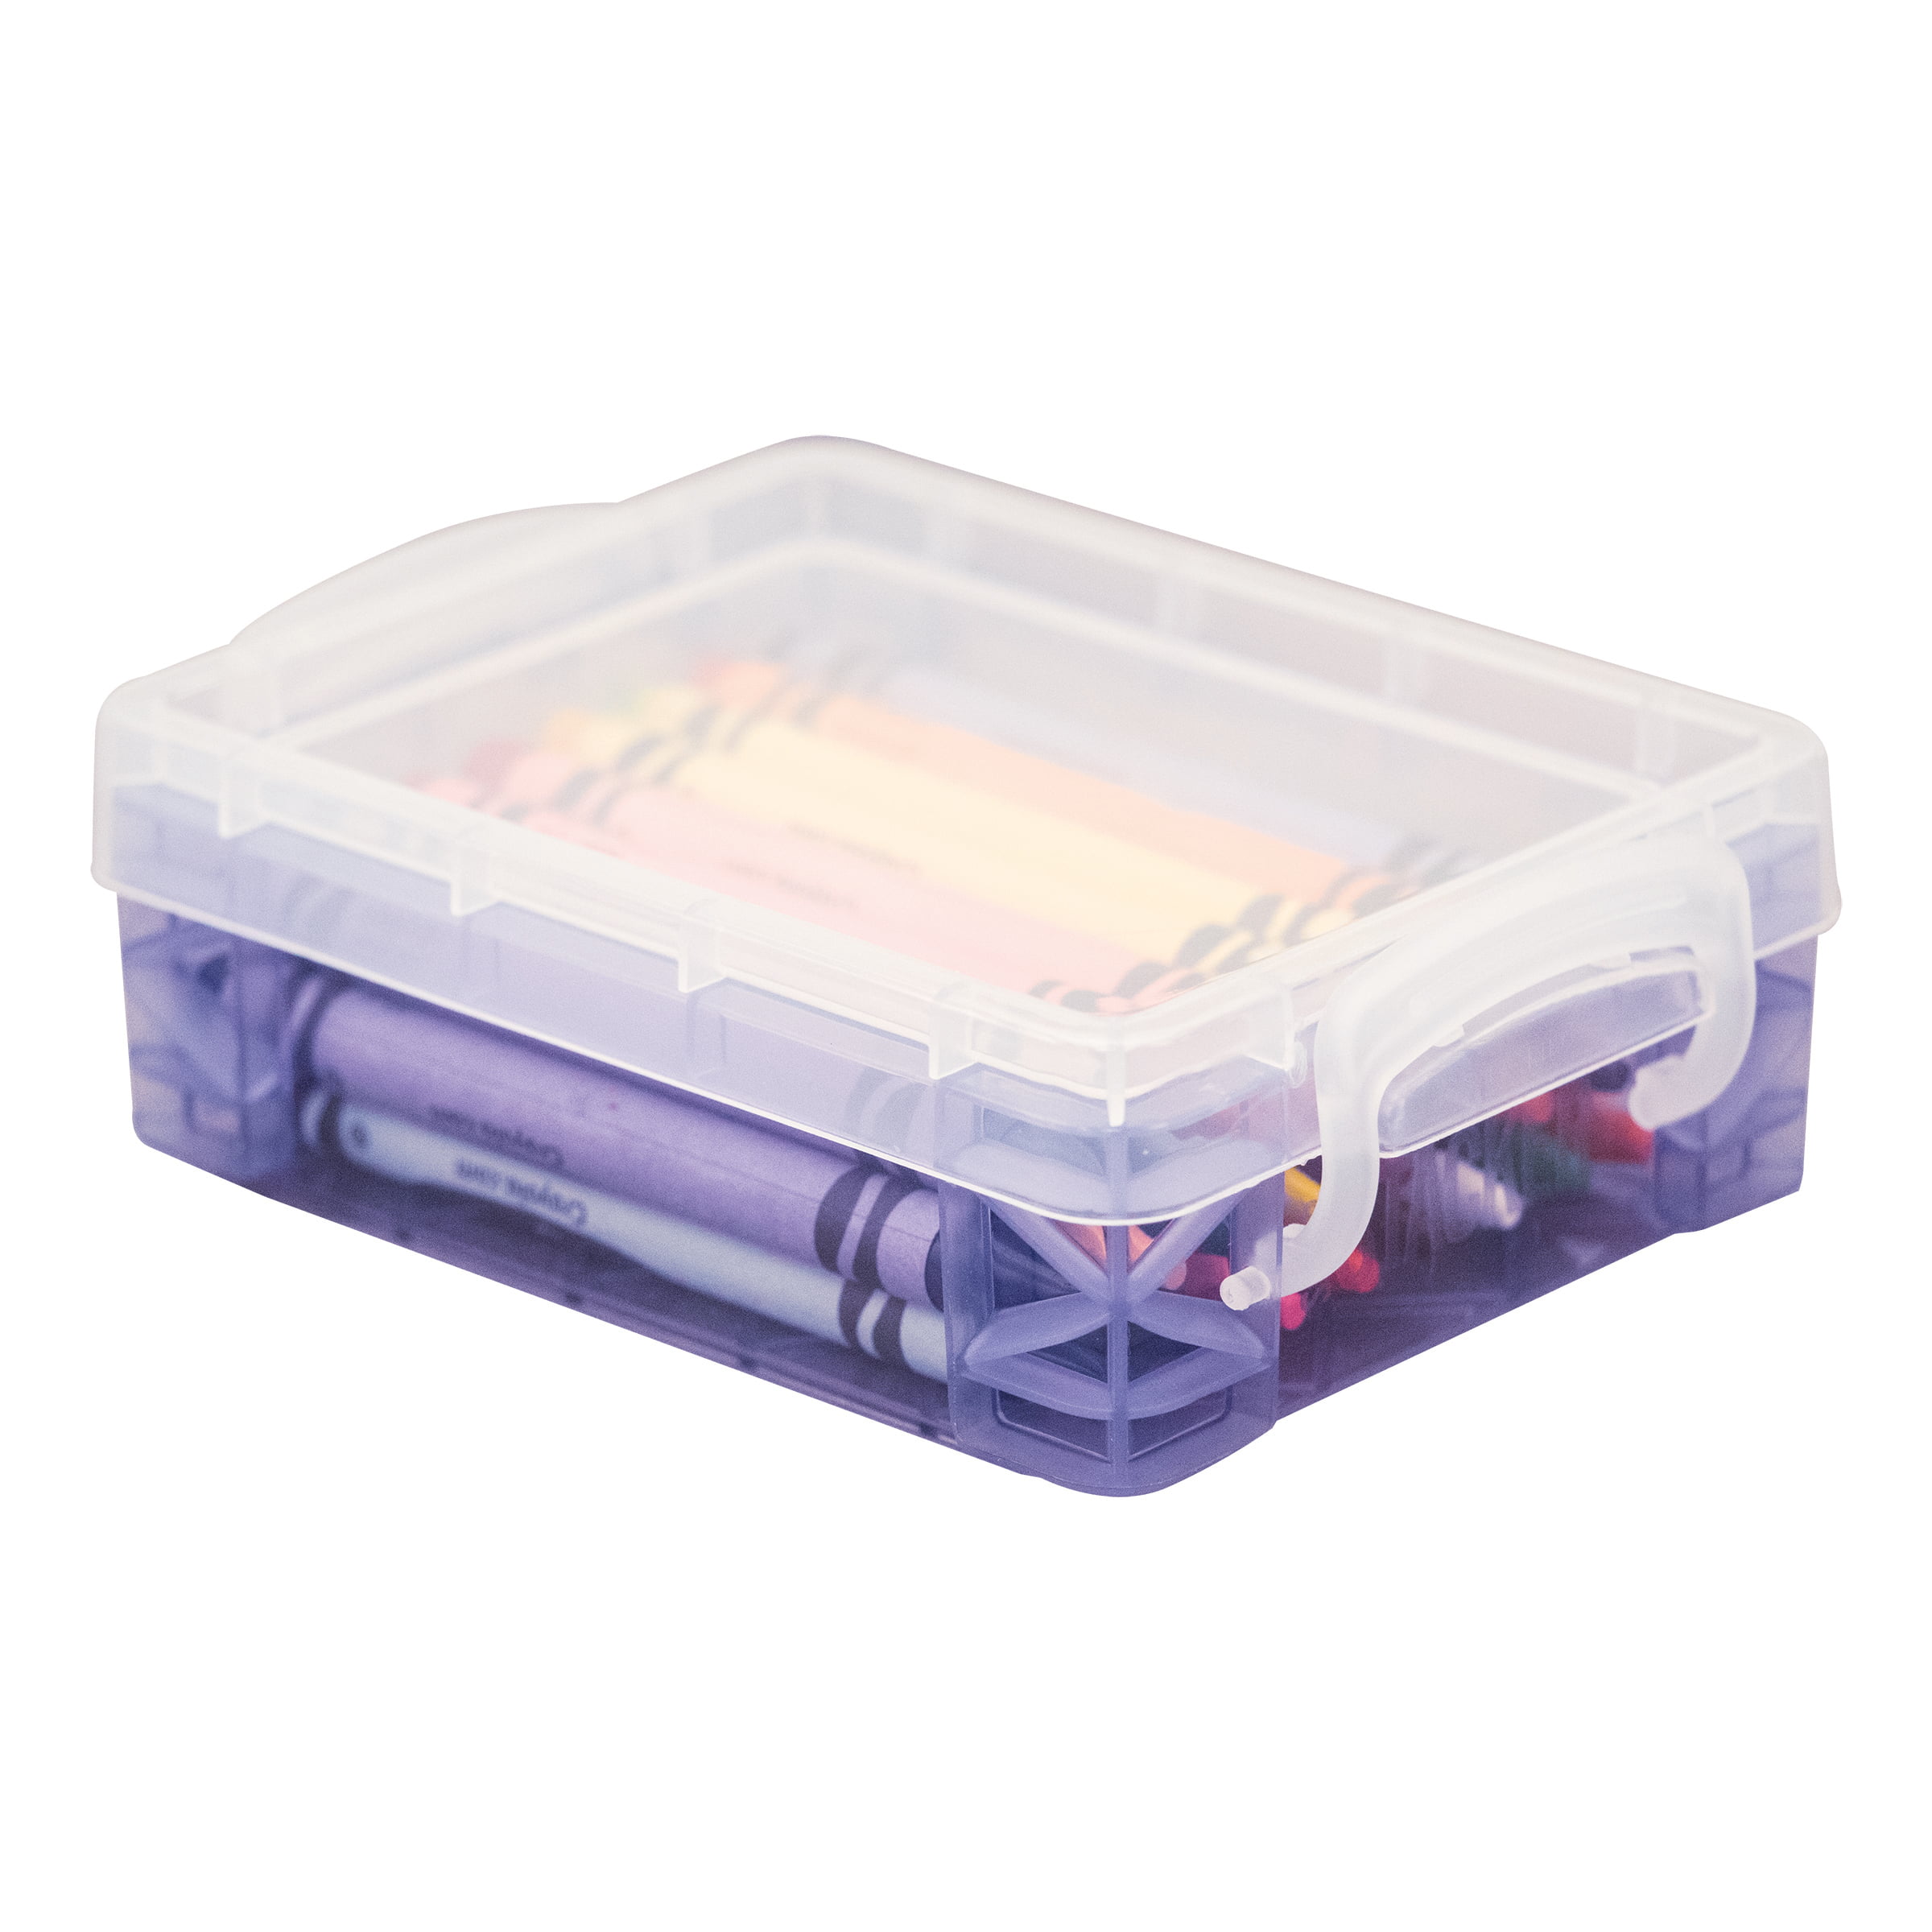 Super Stacker Crayon Box, Color May Vary – King Stationary Inc